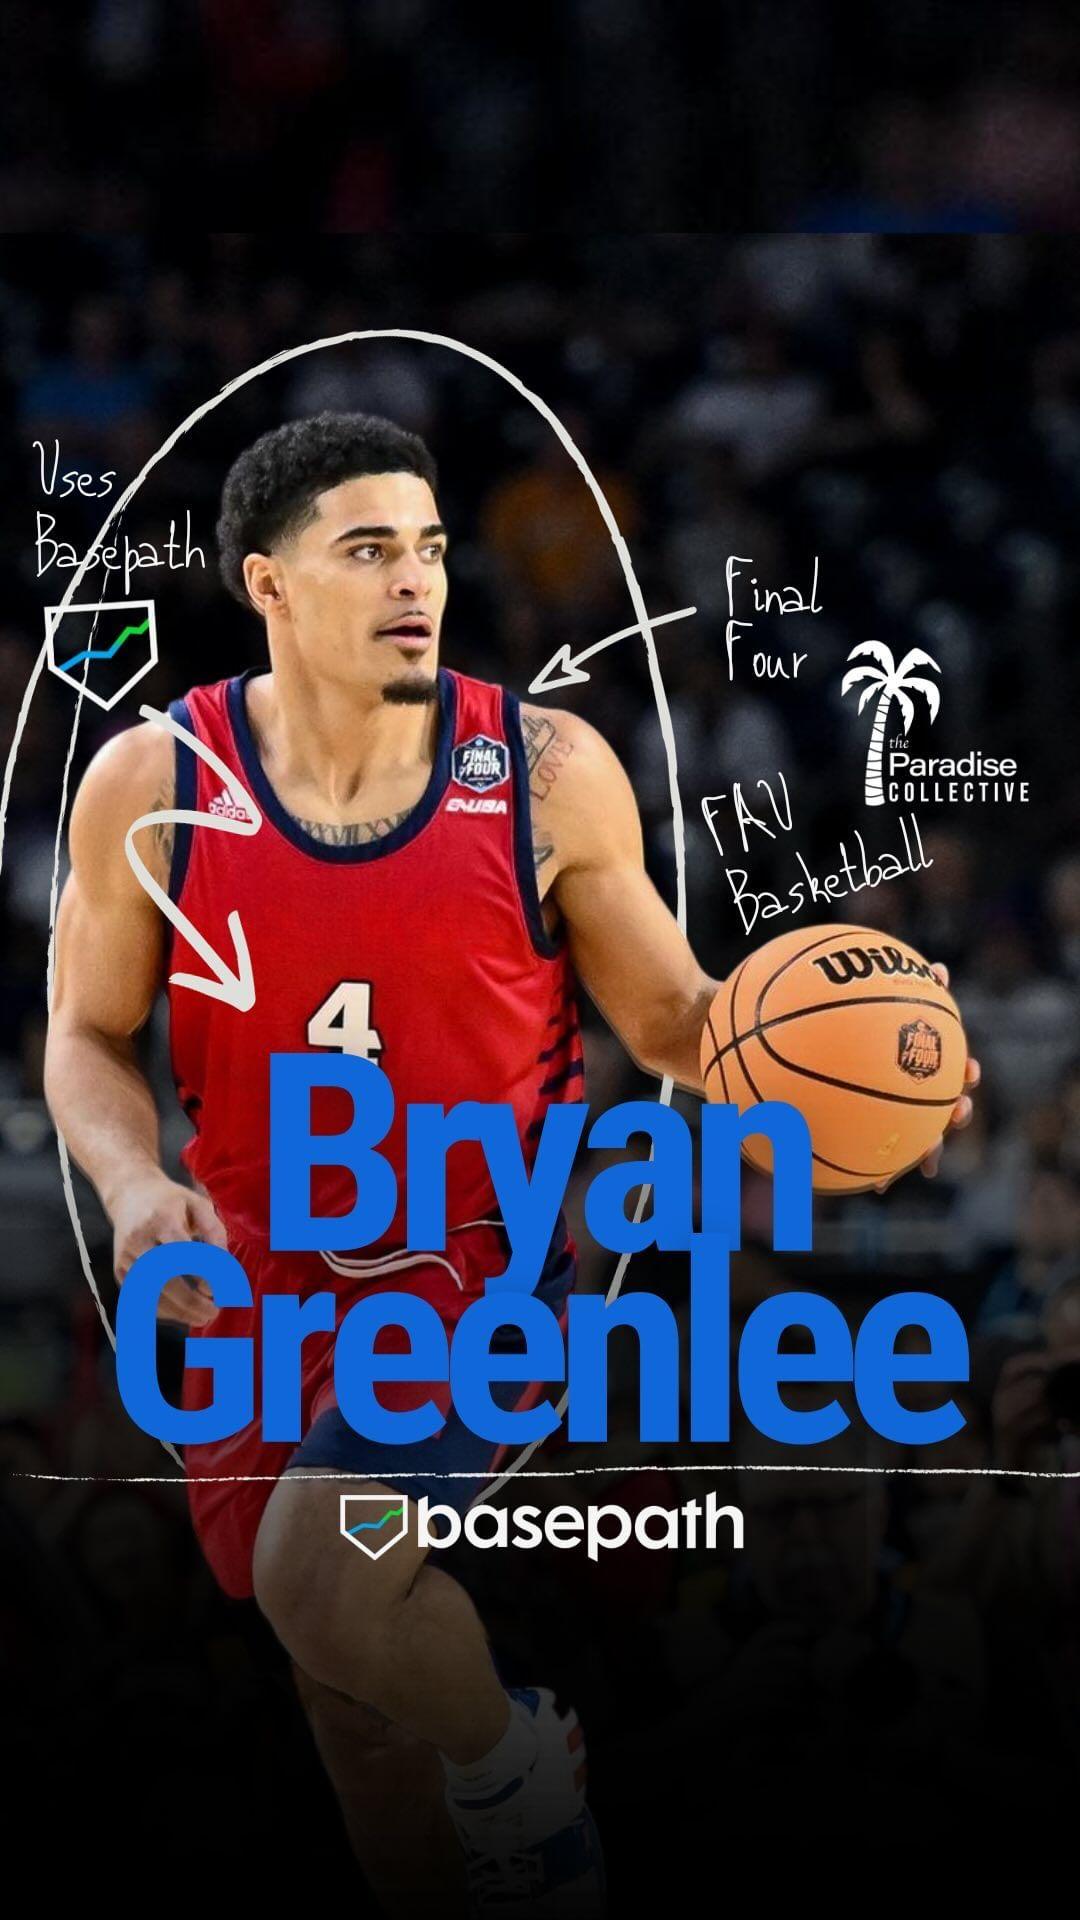 Bryan Greenlee Instagram Post Influencer Campaign